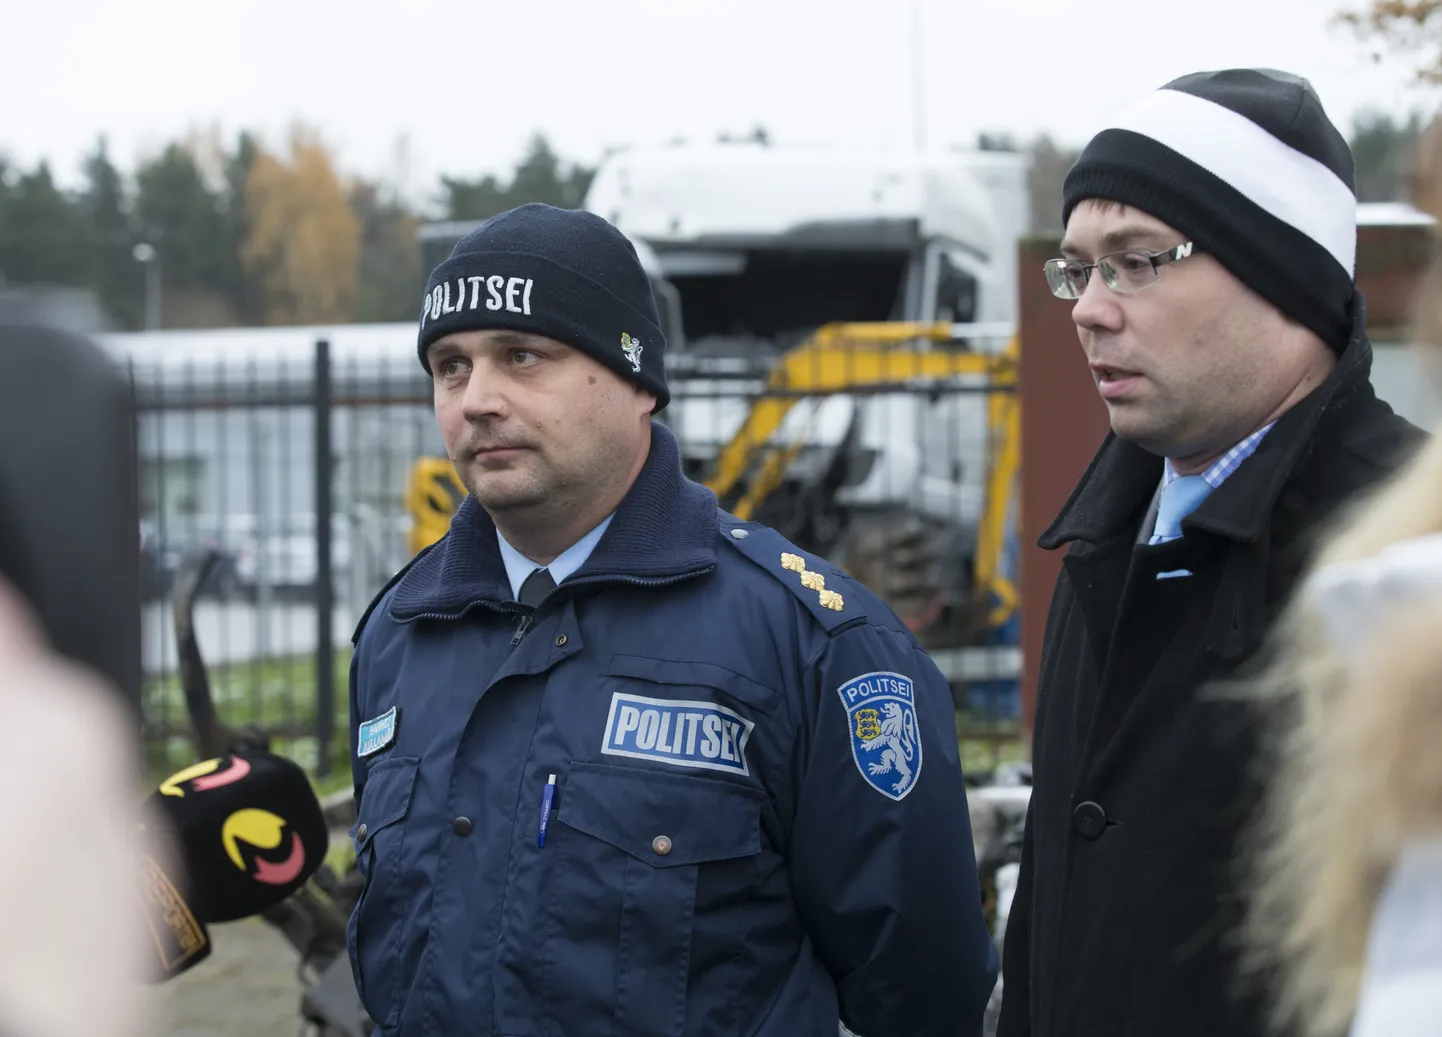 Põhja prefektuuri liiklusjärelevalvekeskuse juht Hannes Kullamäe seisab fotol vasakul.